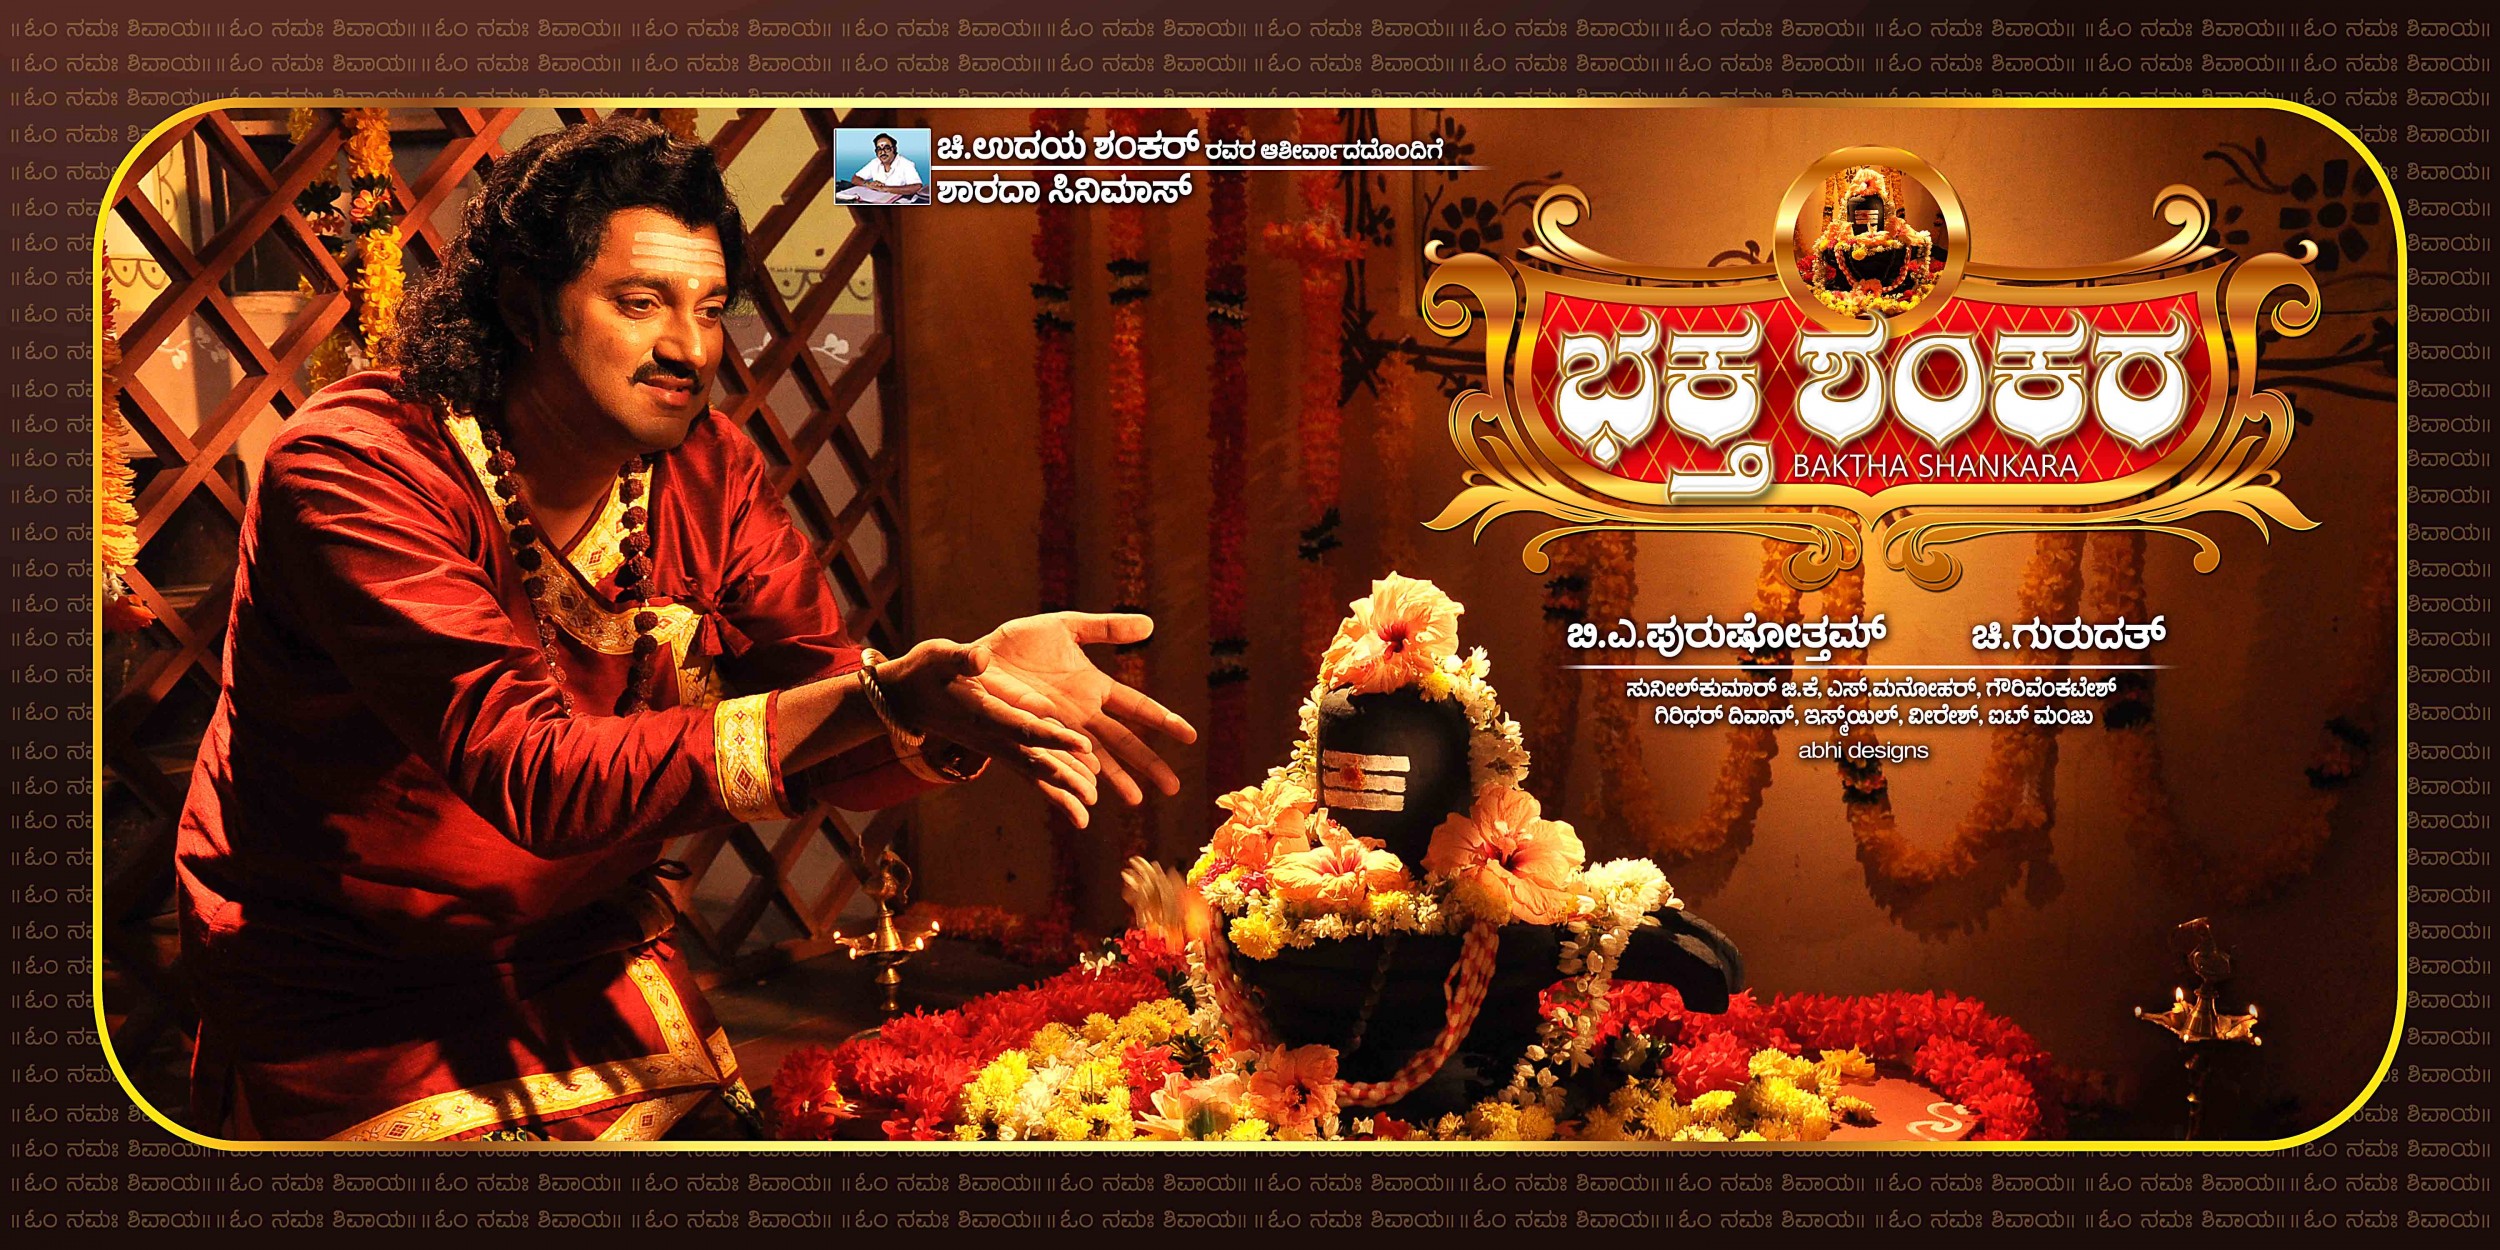 Mega Sized Movie Poster Image for Baktha Shankara (#1 of 10)